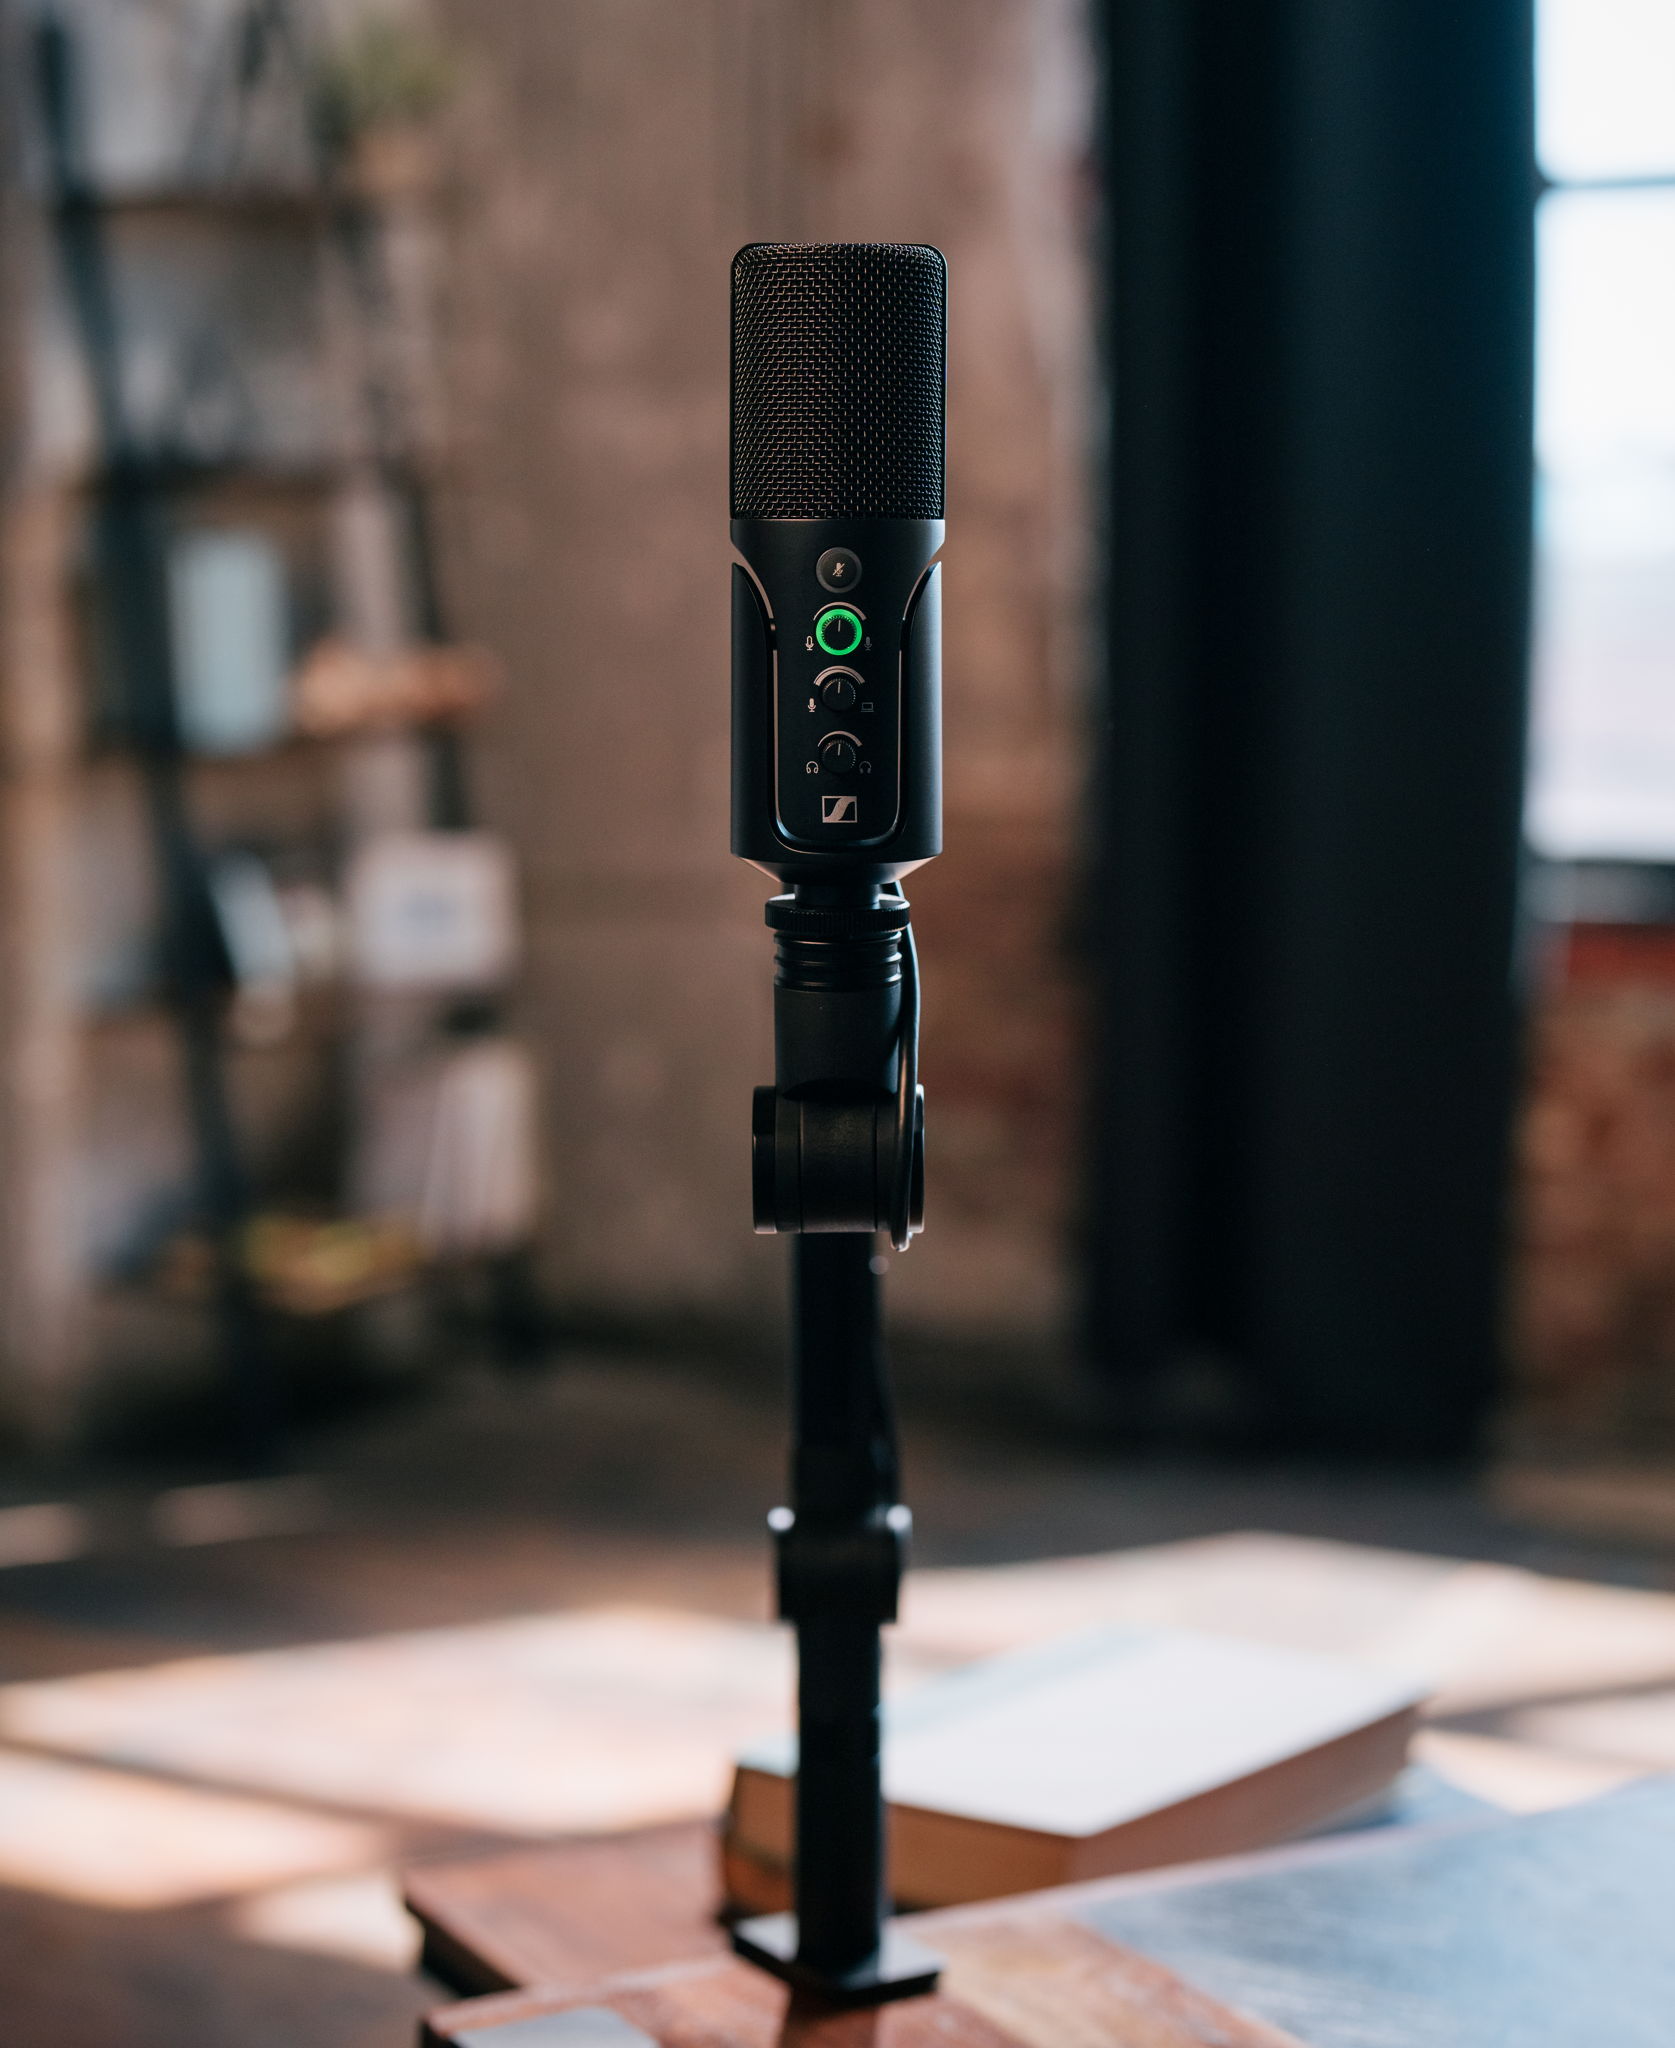 Das Profile USB-Mikrofon wurde für Podcasting- und Streaming-Anwendungen entwickelt und vereint Performance mit Accessibilty